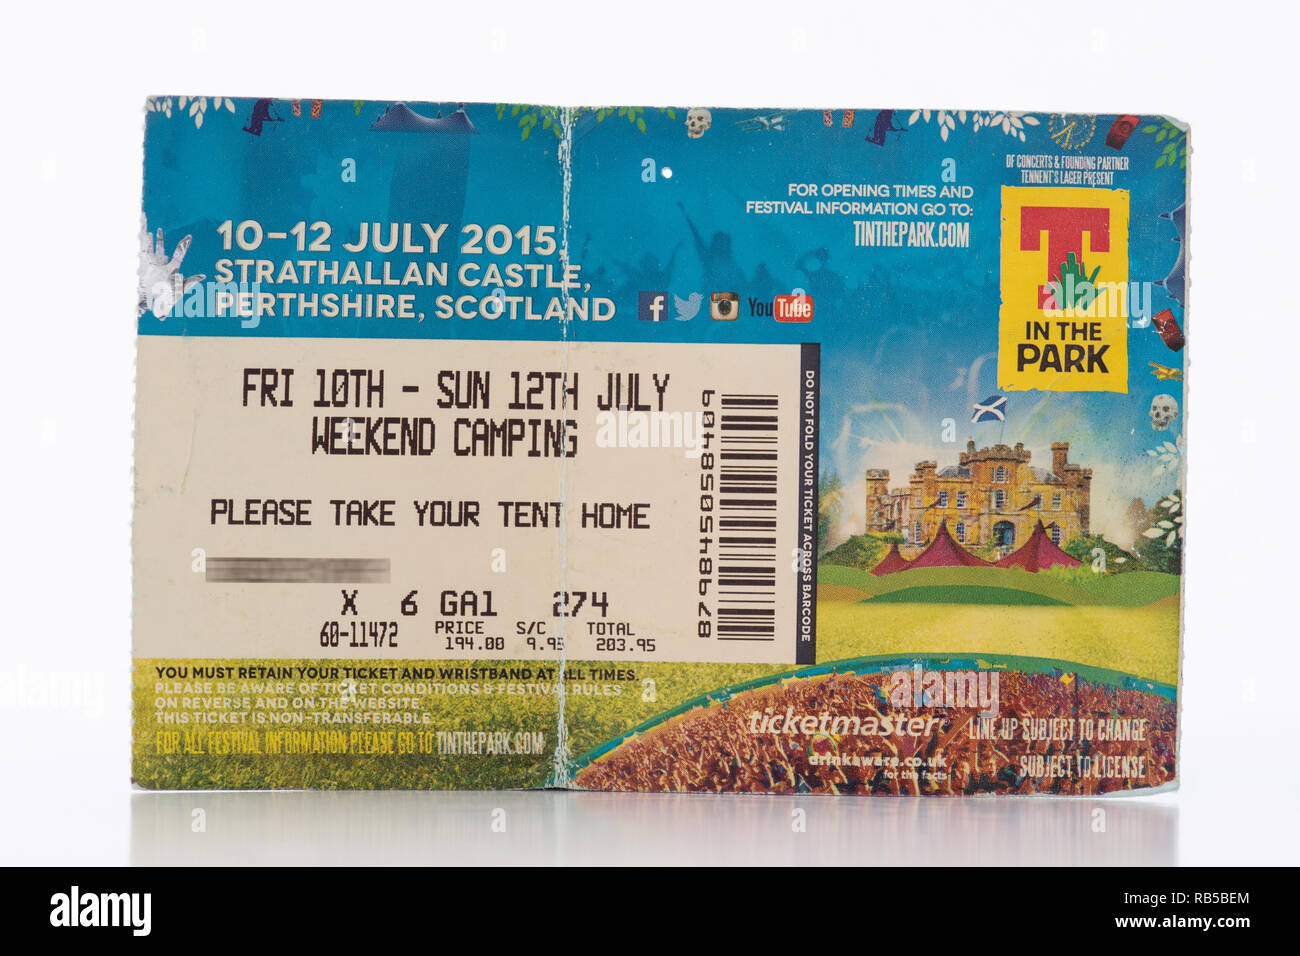 T im Park Ticket 2015 Strathallan Castle, Schottland, UK (Ticket Inhaber Name für Datenschutz verdeckt) - schottischer Musik Festival Stockfoto